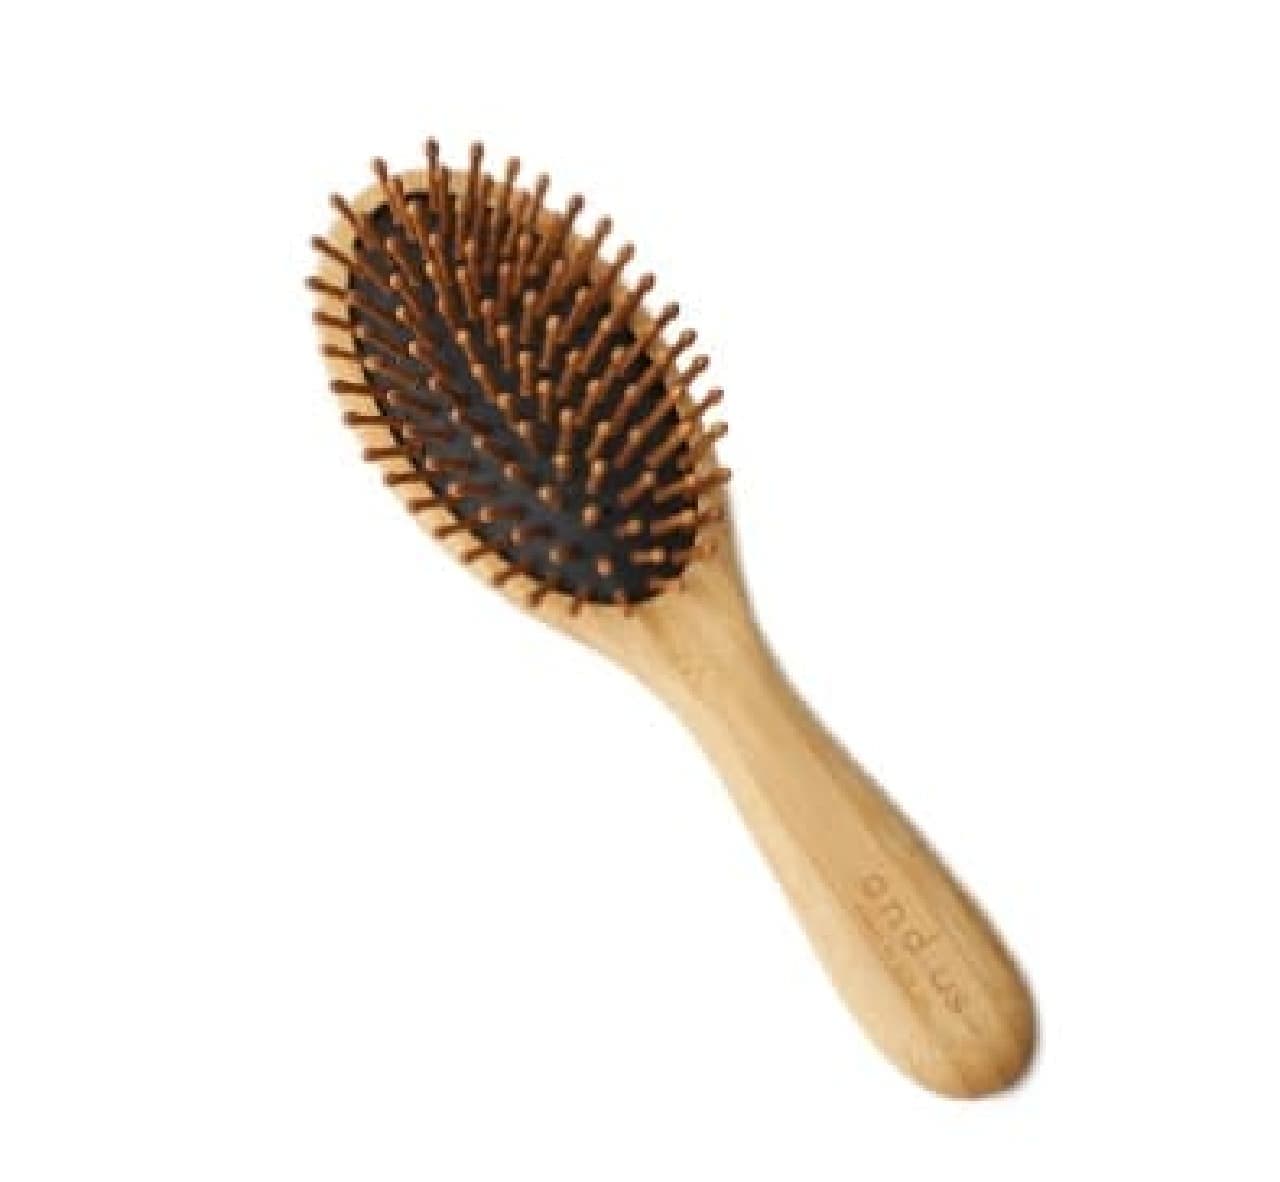 This is the hairbrush gazo